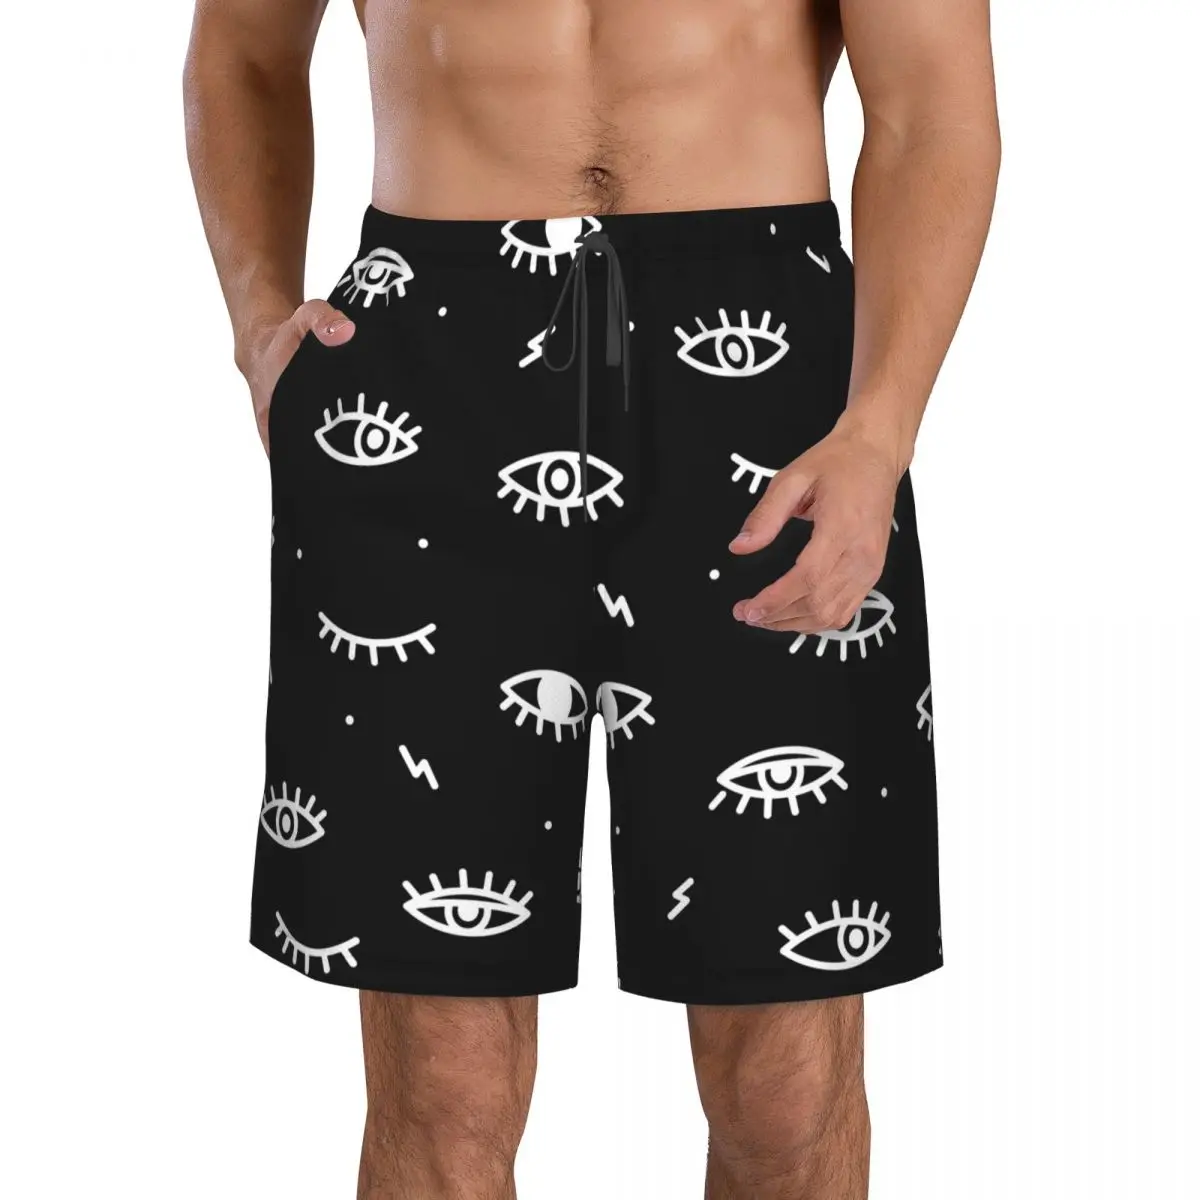 

Быстросохнущие шорты для плавания для мужчин, одежда для плавания, Мужской купальный костюм, плавки для плавания, летняя пляжная одежда для купания с черно-белым принтом глаз